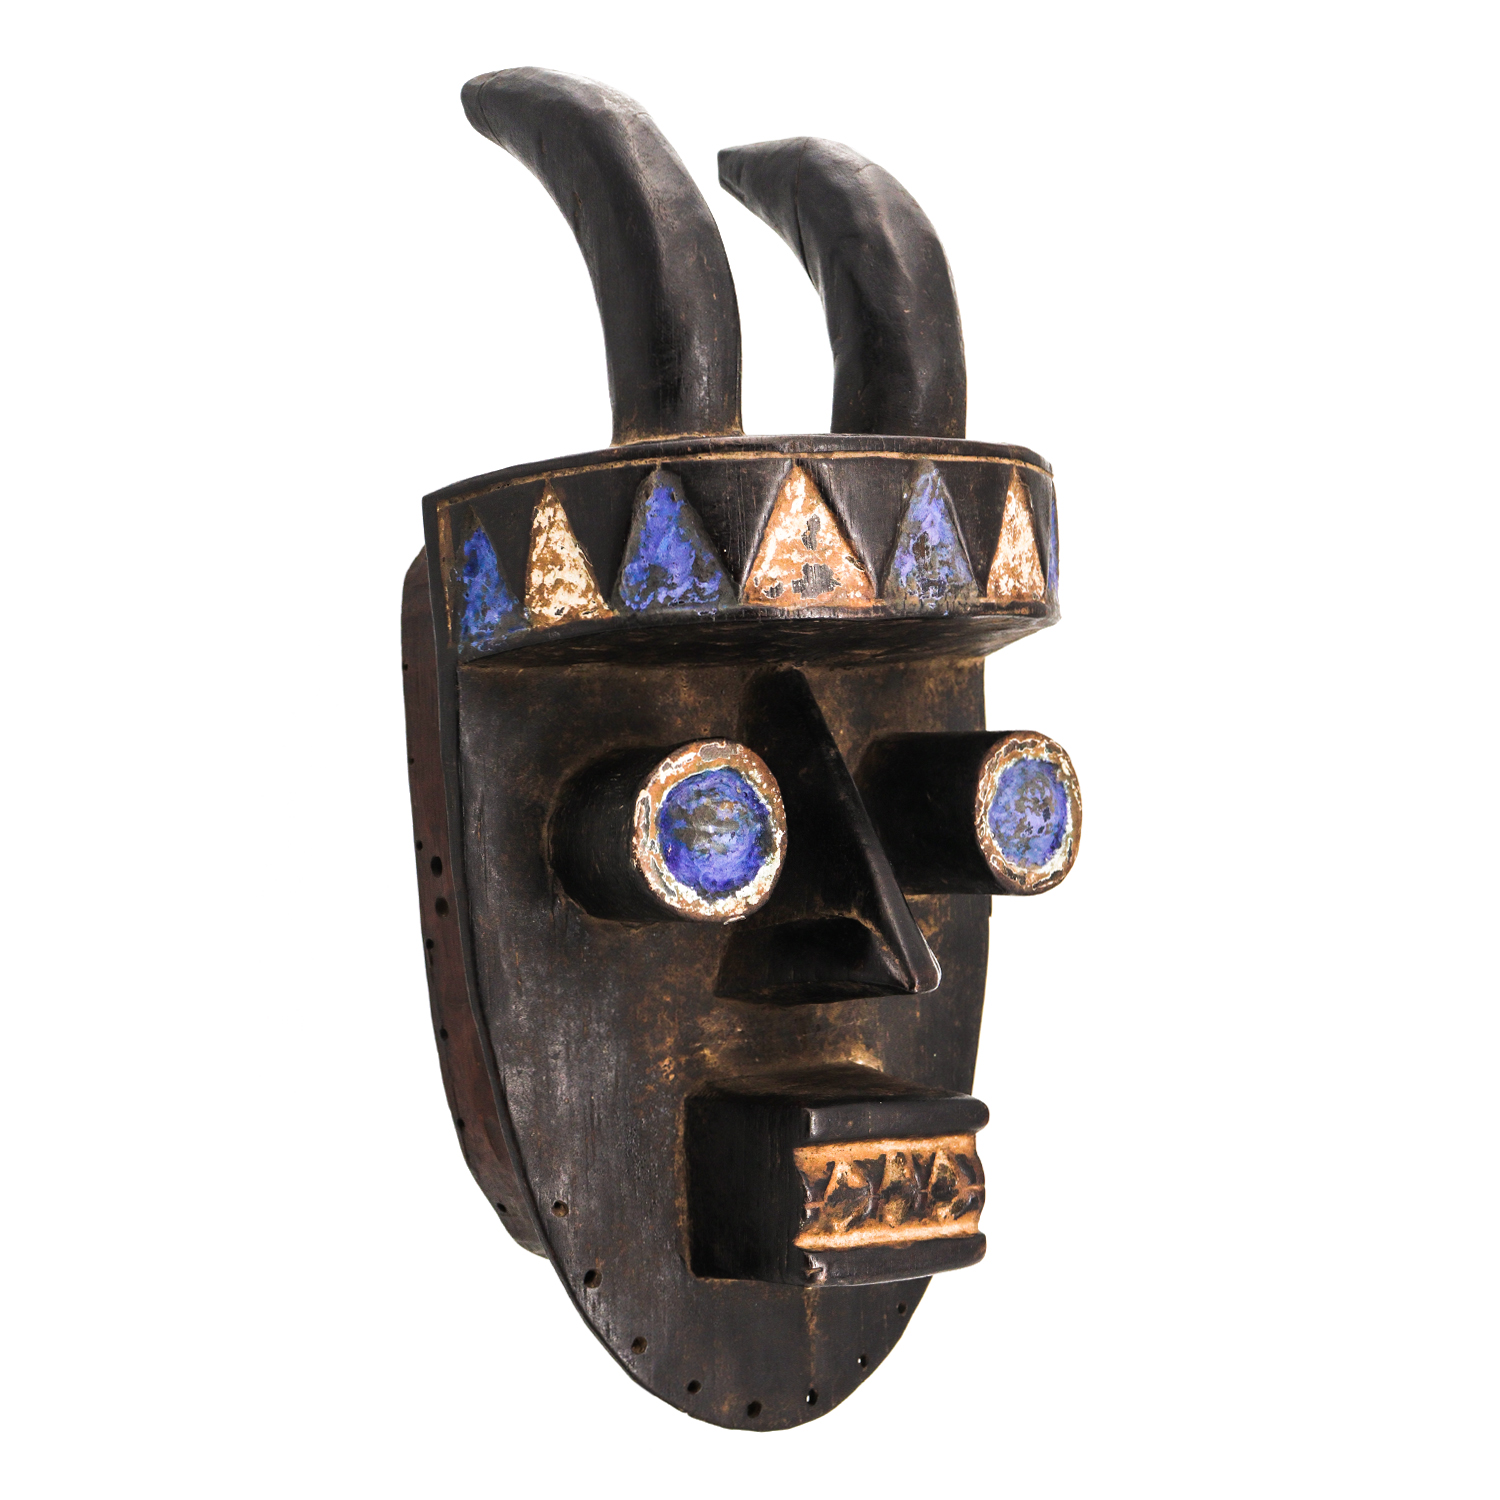 Máscara Ritual, Grebo, Libéria, Séc. XX, madeira, pigmentos, 18x37x15cm – Ref CCT21-037 [COLECÇÃO CRUZES CANHOTO]